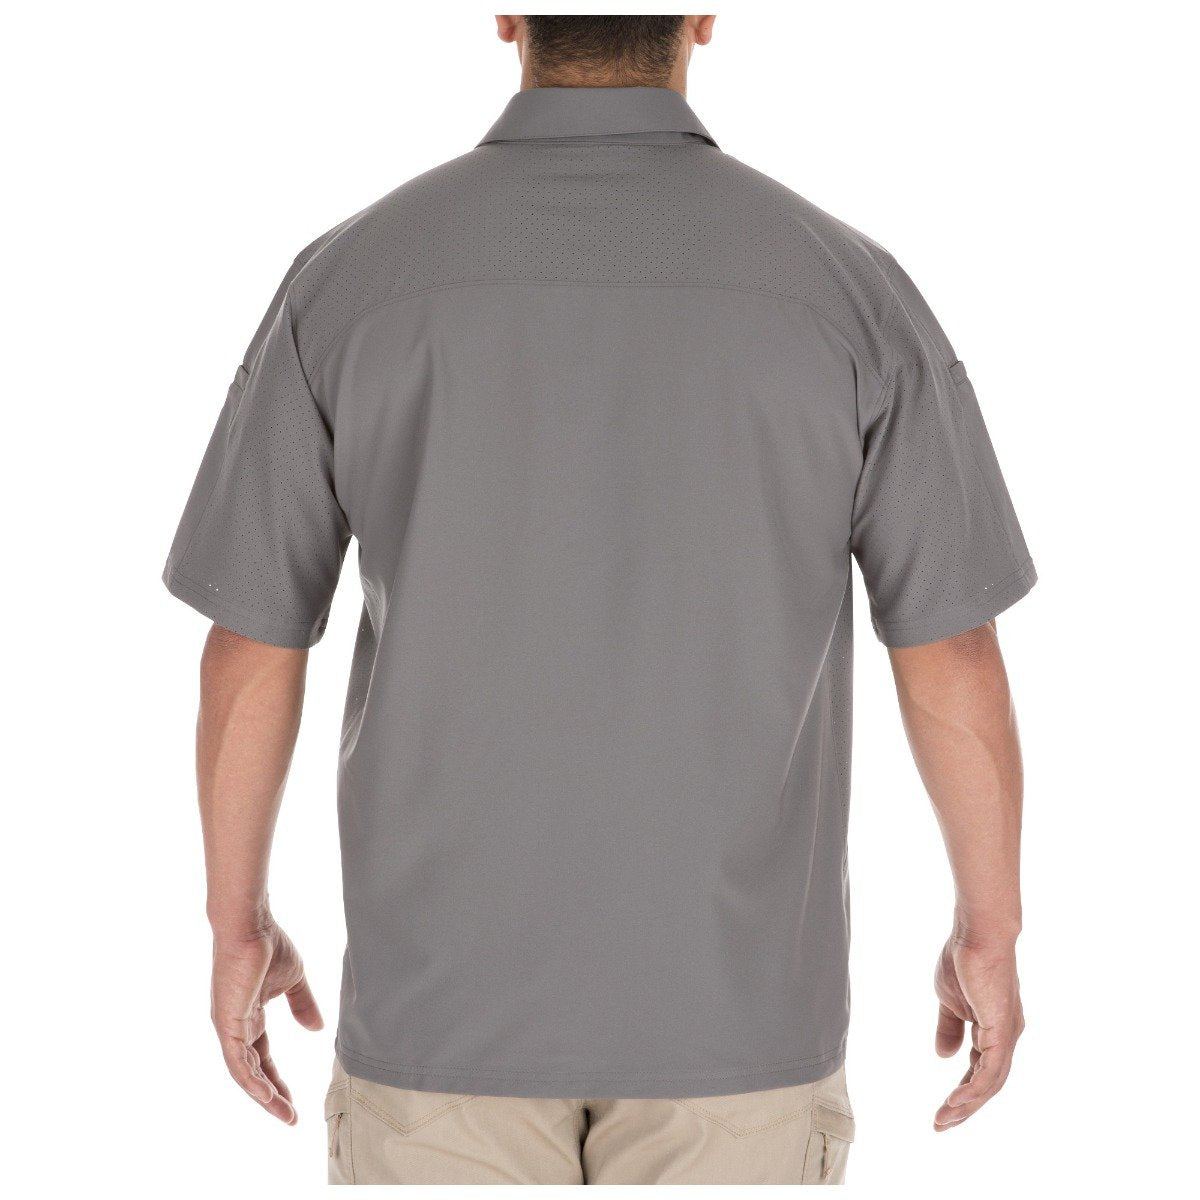 5.11 Tactical Freedom Flex Woven Short Sleeve Shirt Storm Shirts 5.11 Tactical Small Tactical Gear Supplier Tactical Distributors Australia